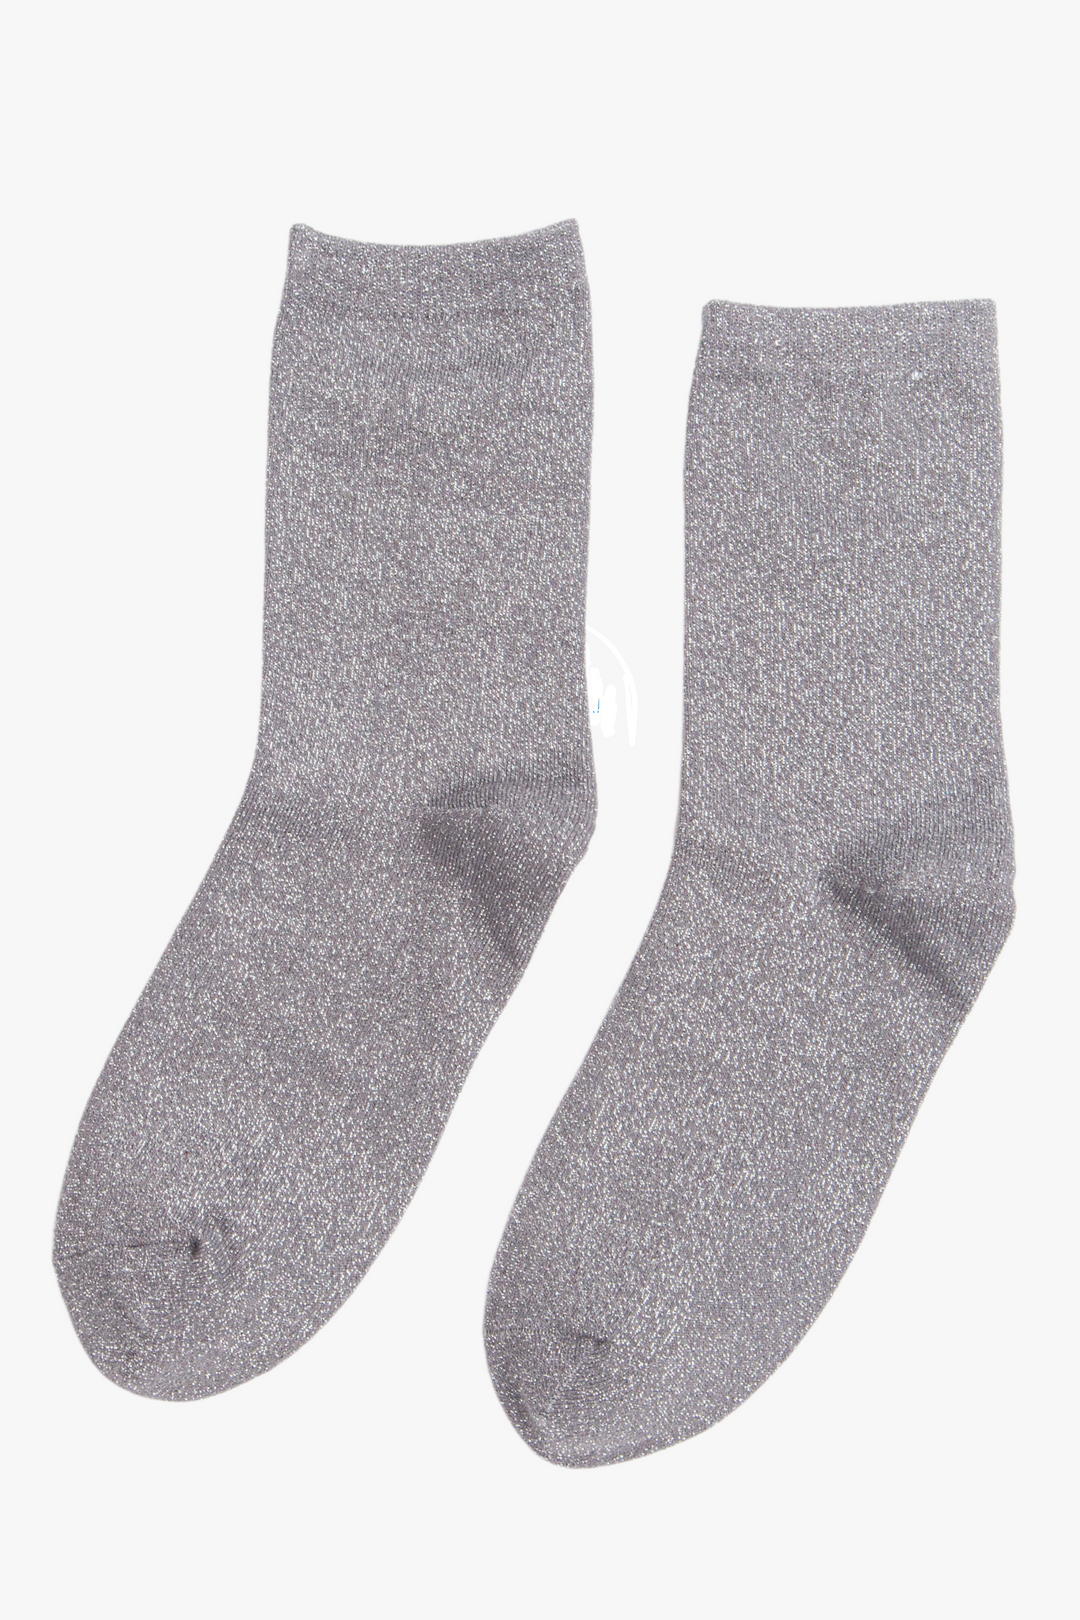 Womens Glitter Socks Silver Sparkly Ankle Socks Shimmer Grey